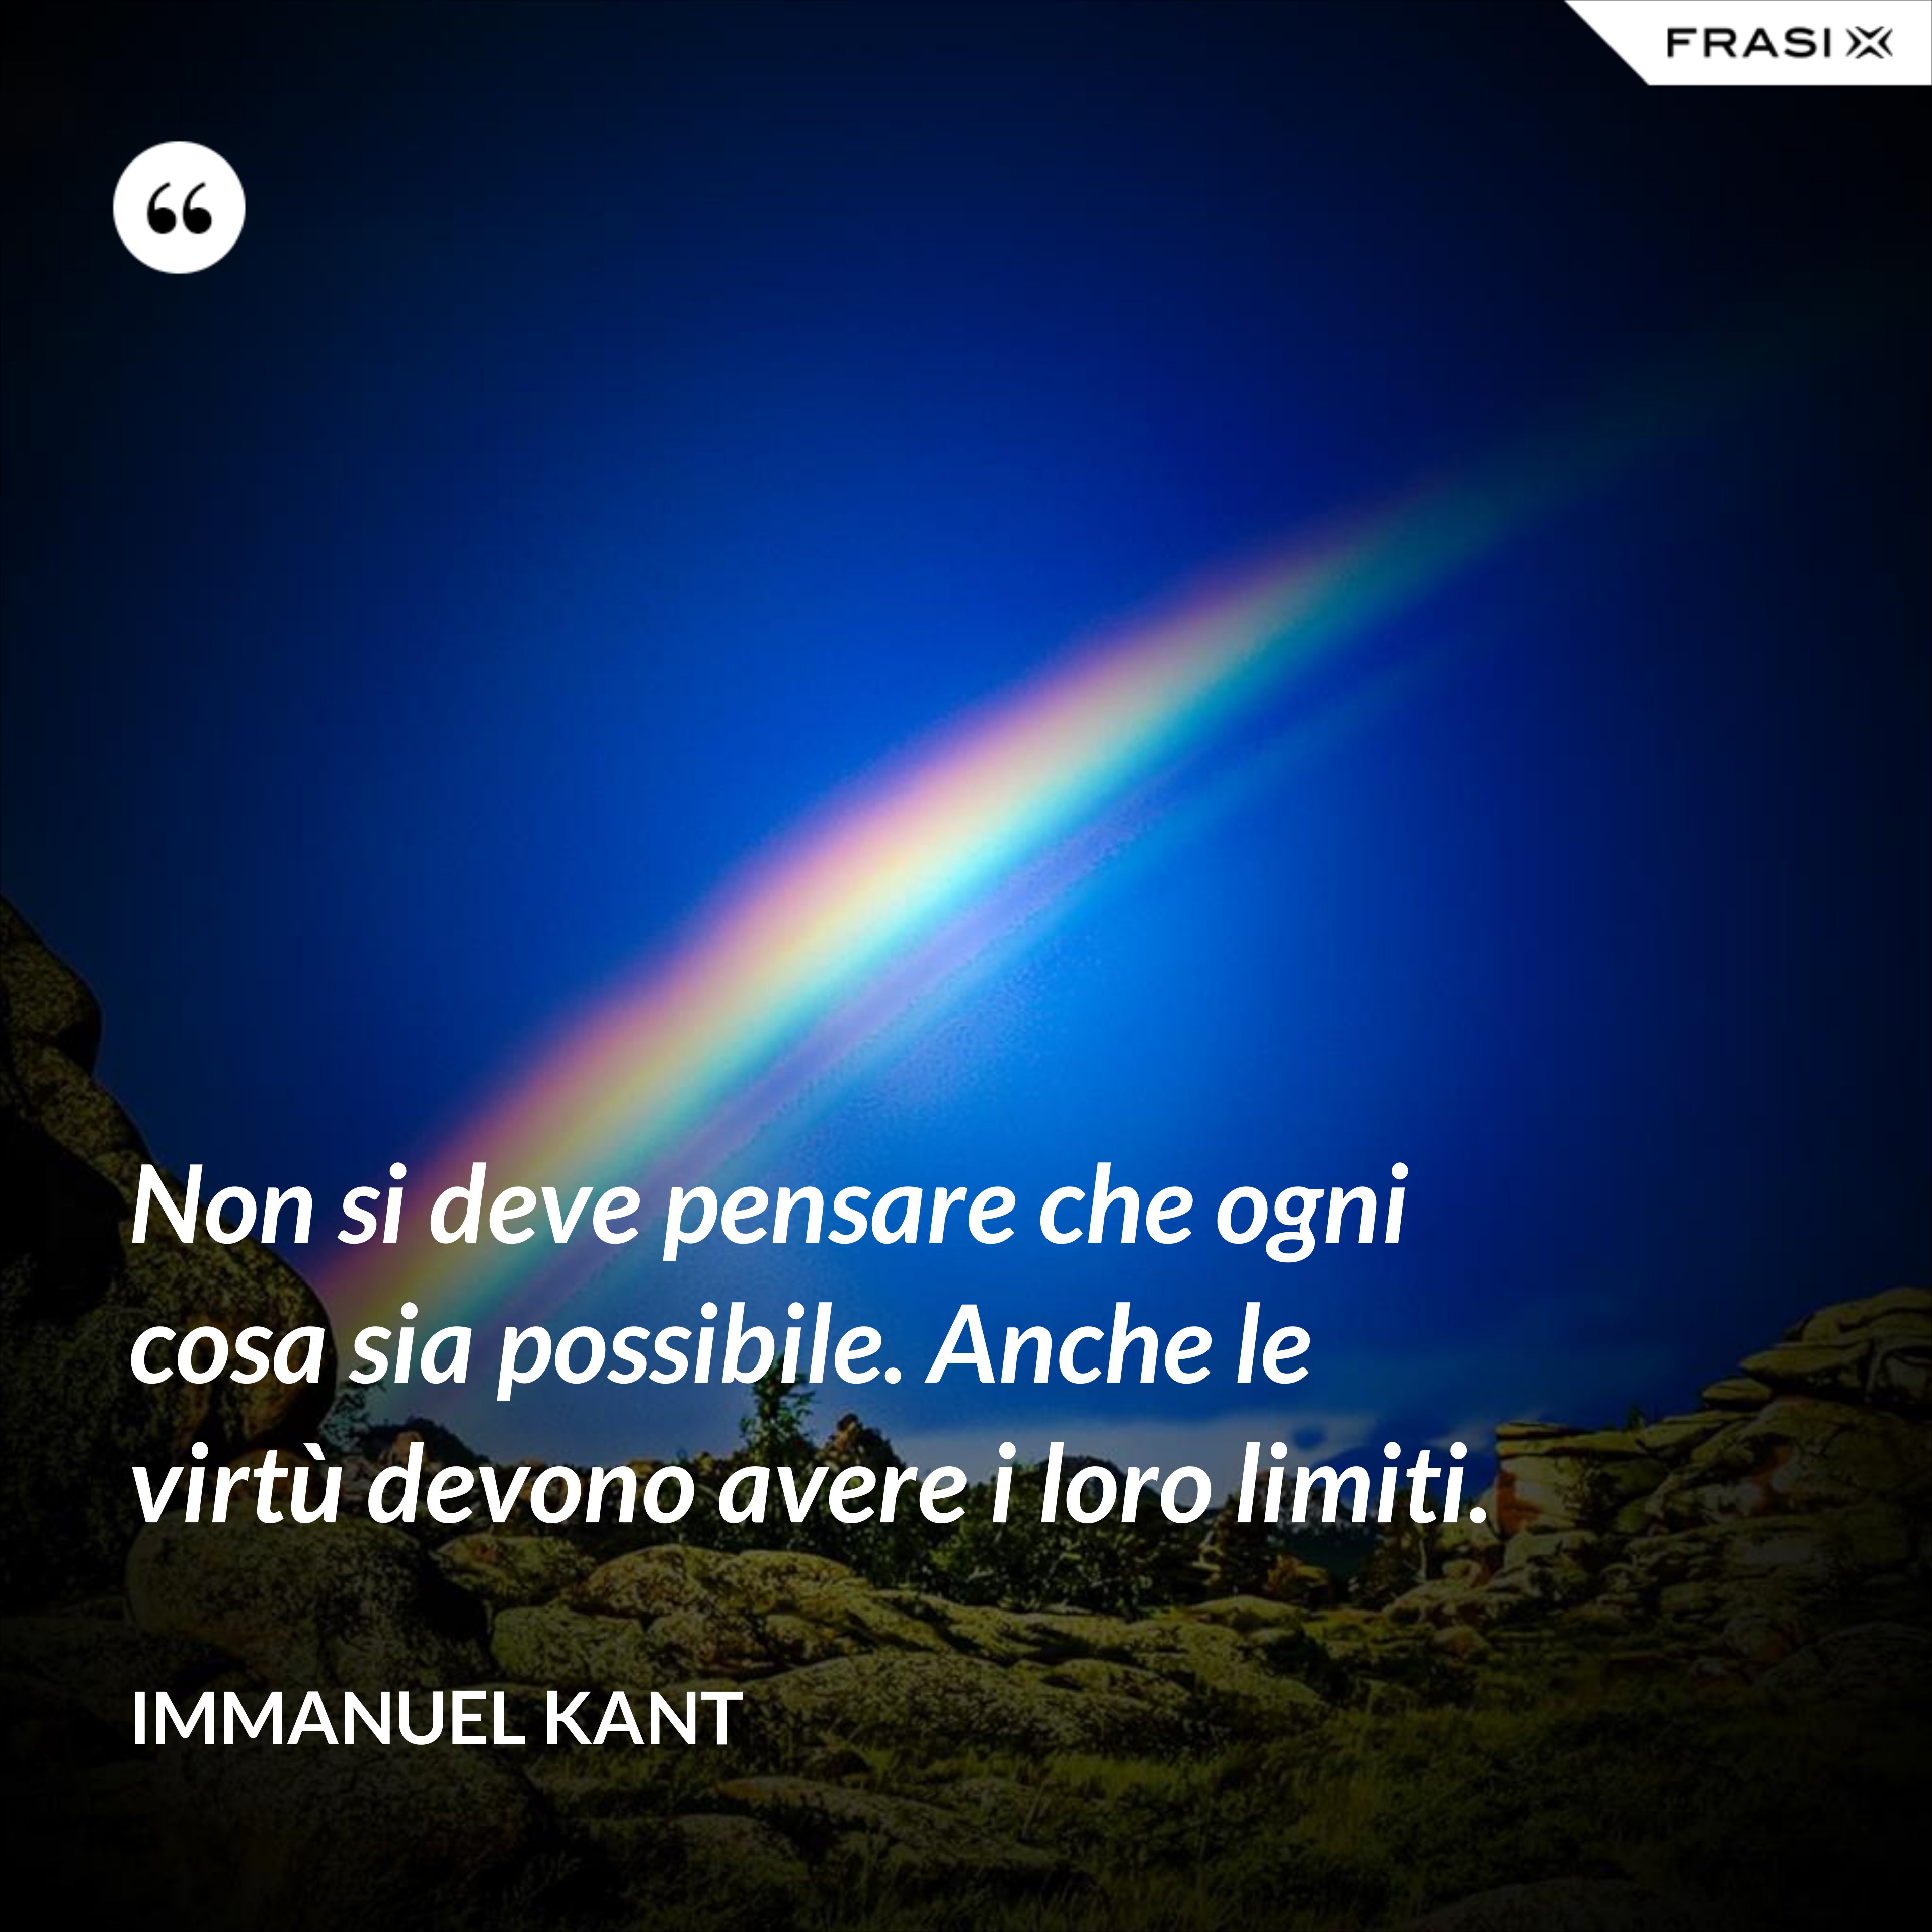 Non si deve pensare che ogni cosa sia possibile. Anche le virtù devono avere i loro limiti. - Immanuel Kant